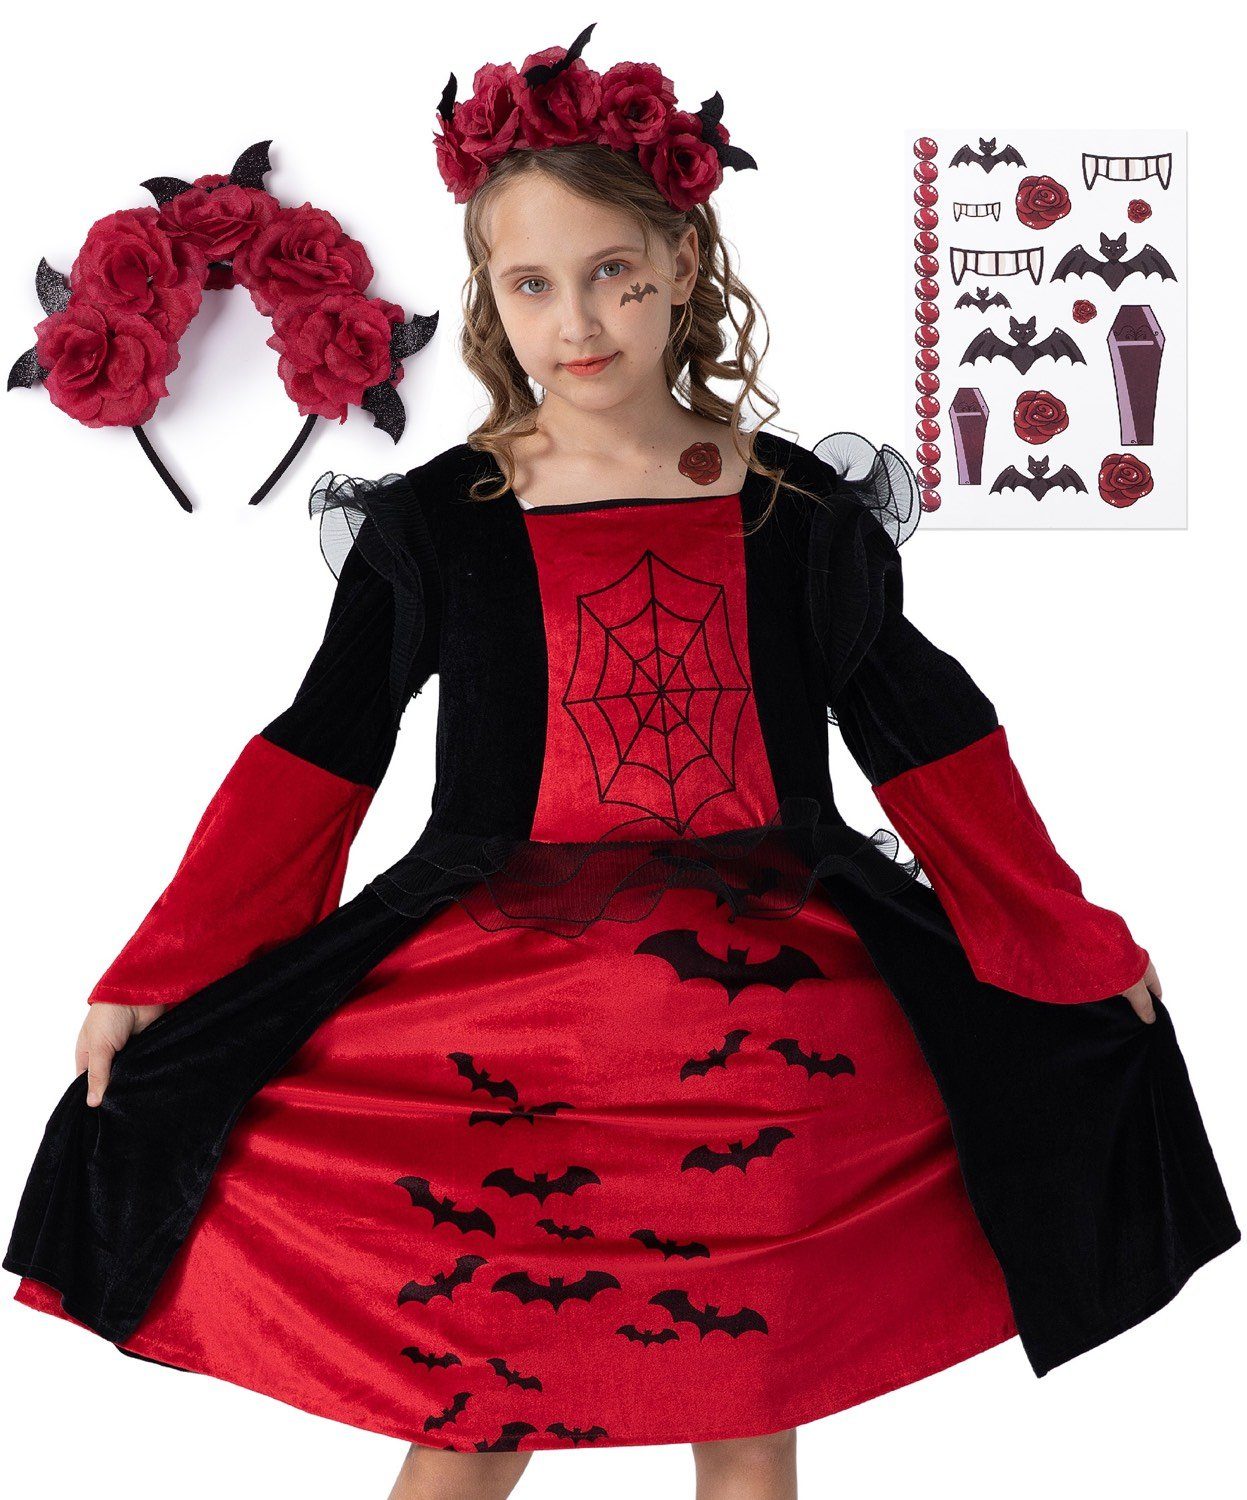 Corimori Vampir-Kostüm Vampir Halloween-Kostüm Set Kinder-Kleid, Karneval,  Mit Haarreif, Klebe-Tattoos für Mädchen, Fasching, Geschenkidee